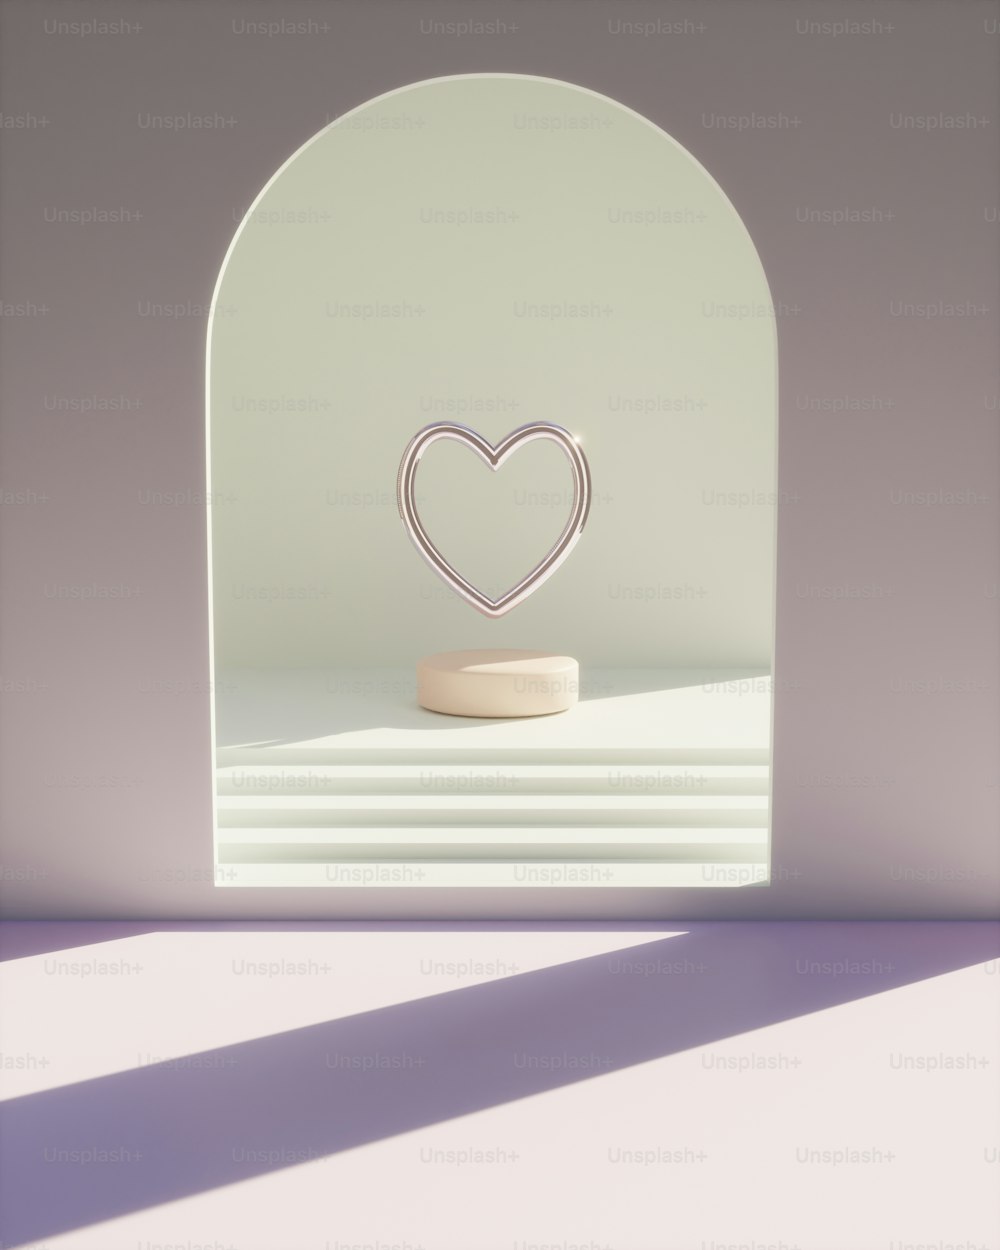 Un oggetto a forma di cuore seduto sopra un tavolo